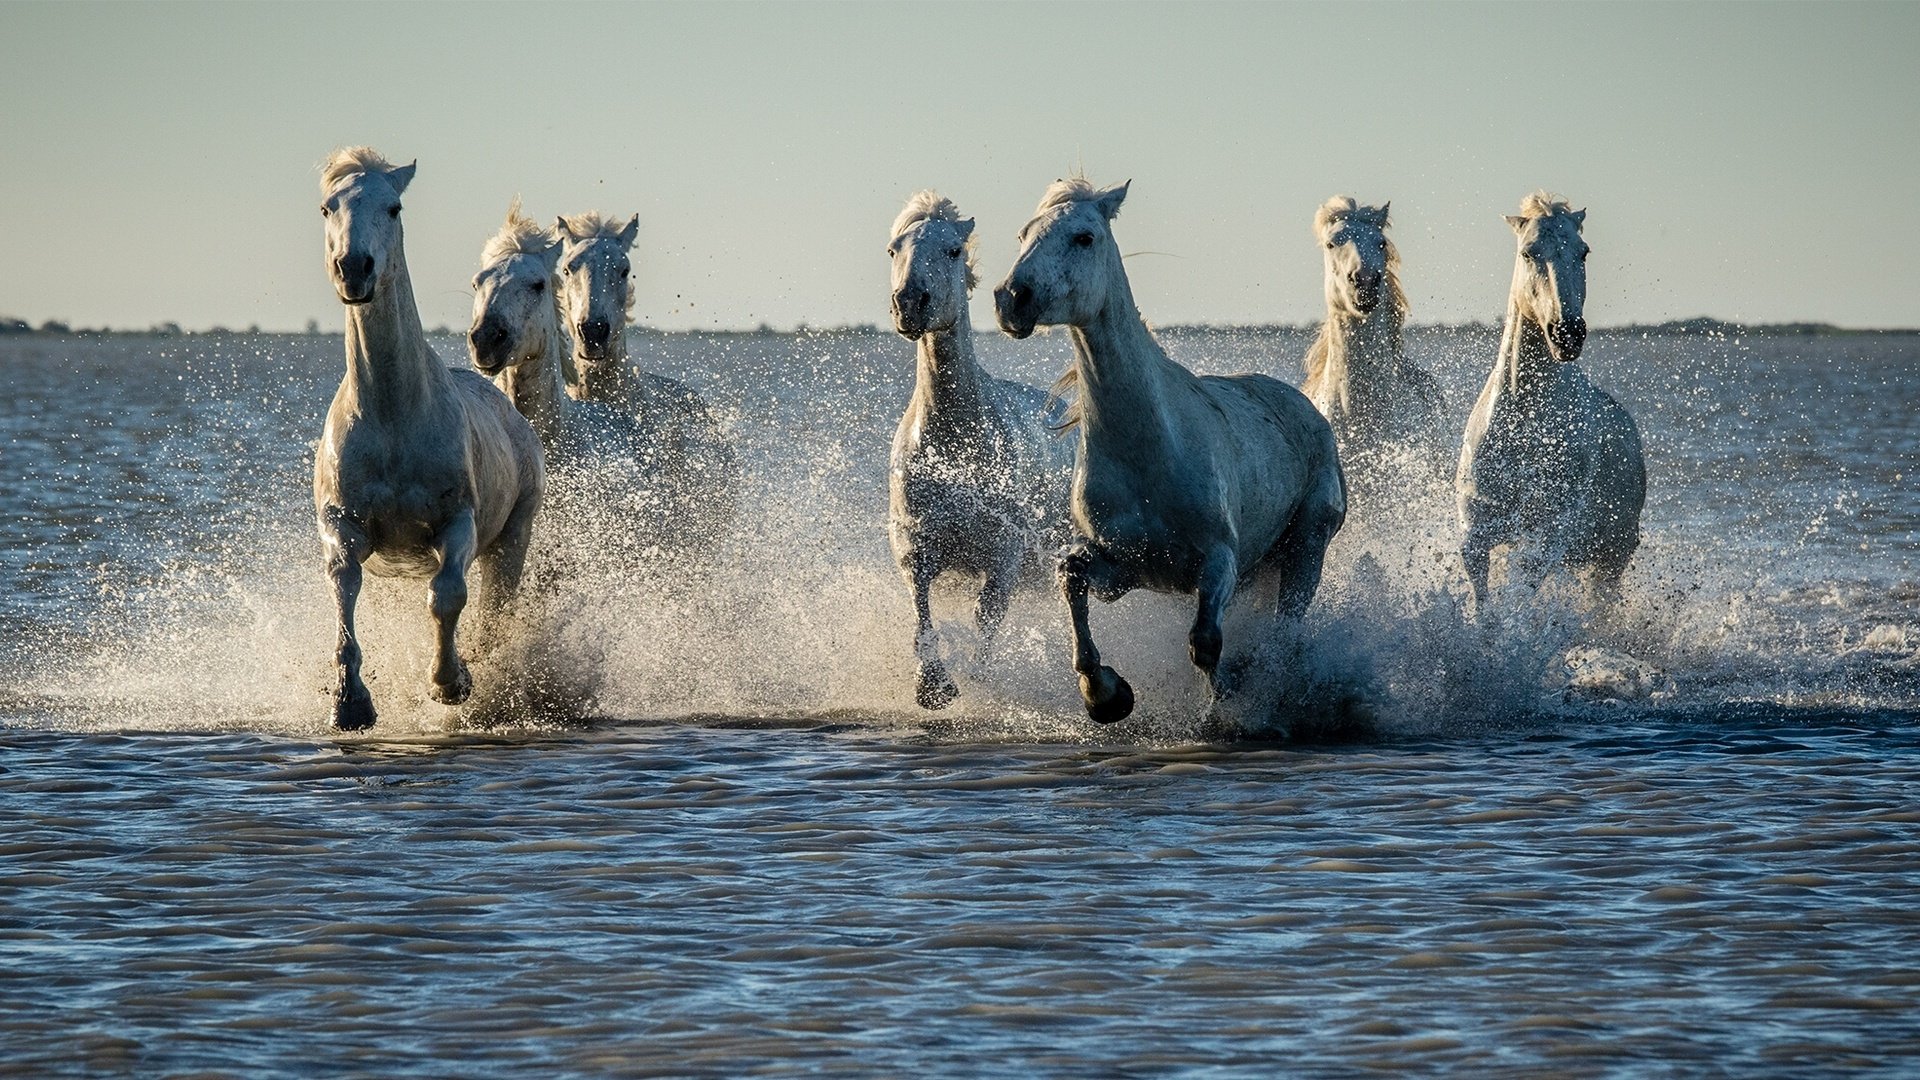 7 Horses In Water - 1920x1080 Wallpaper 